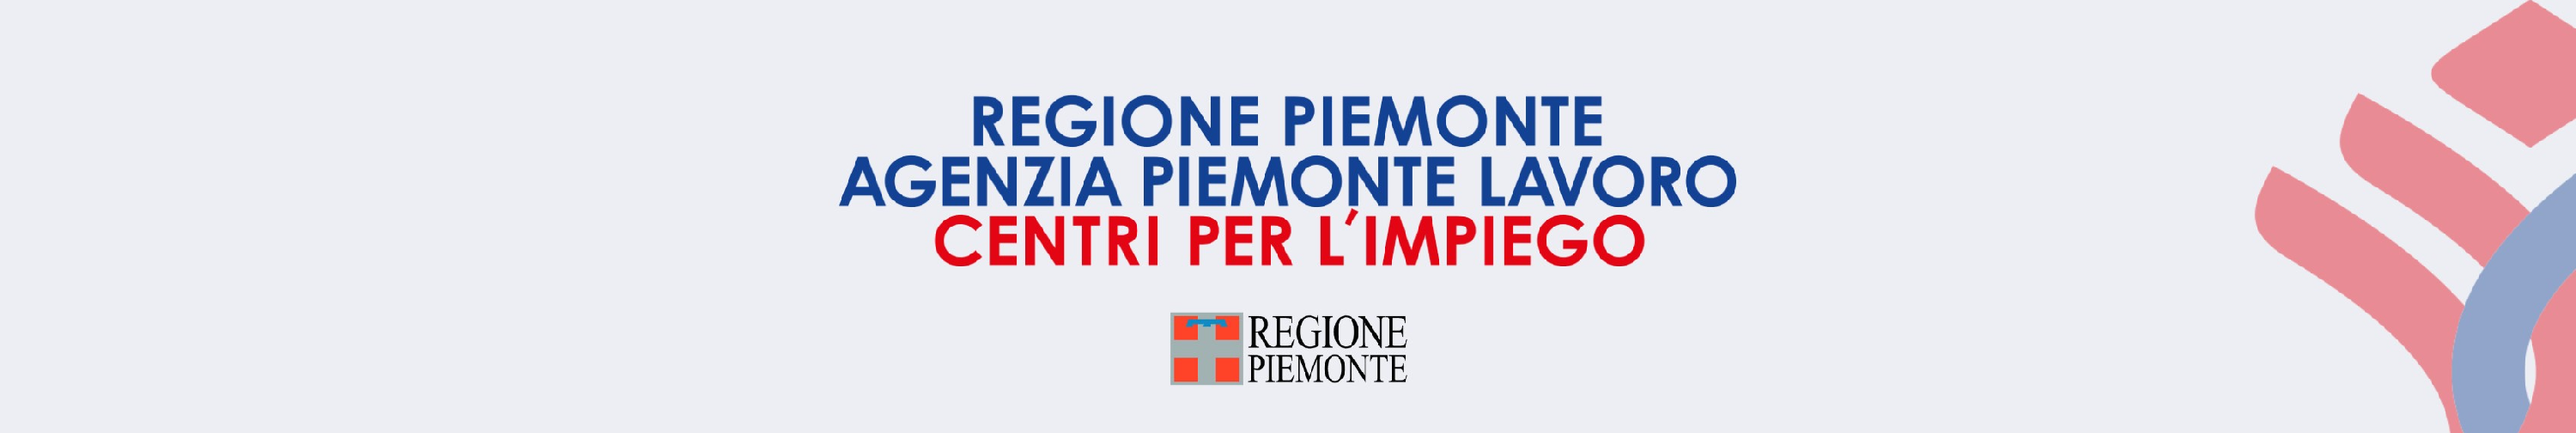 Agenzia Piemonte Lavoro background